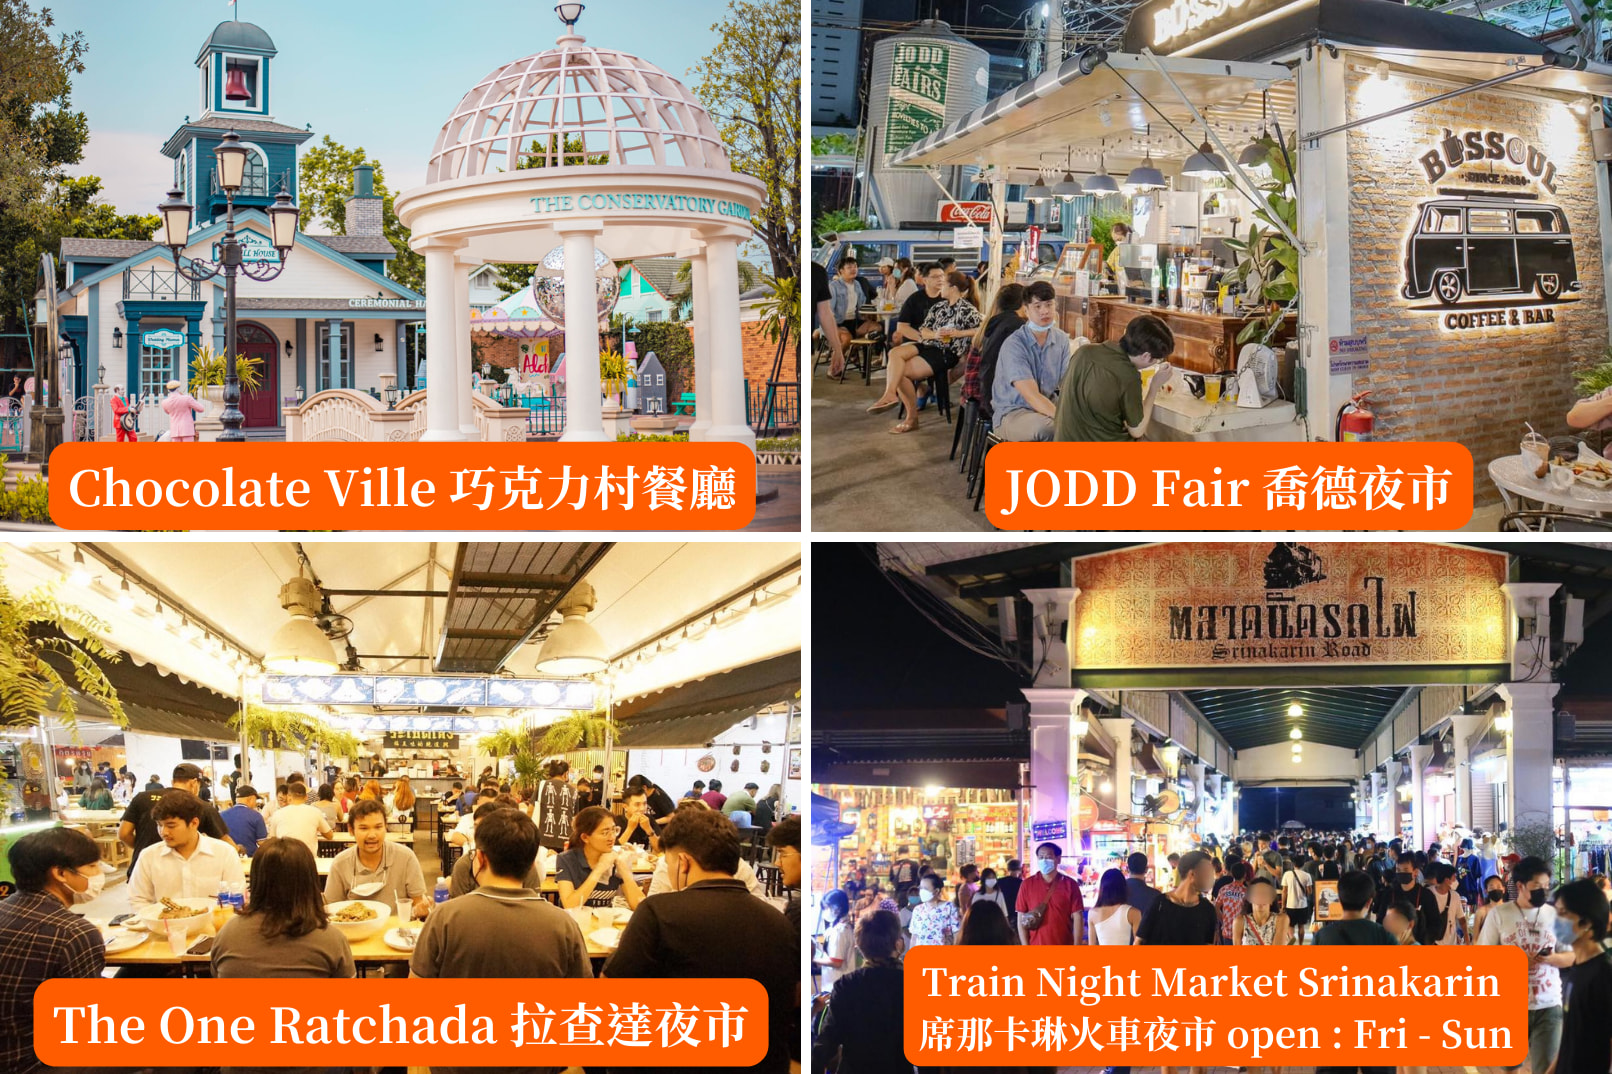 你可以任選著名餐廳或曼谷夜市，包括巧克力莊園、JODD Fair夜市、拉差達火車夜市及席娜卡琳火車夜市（4選1）